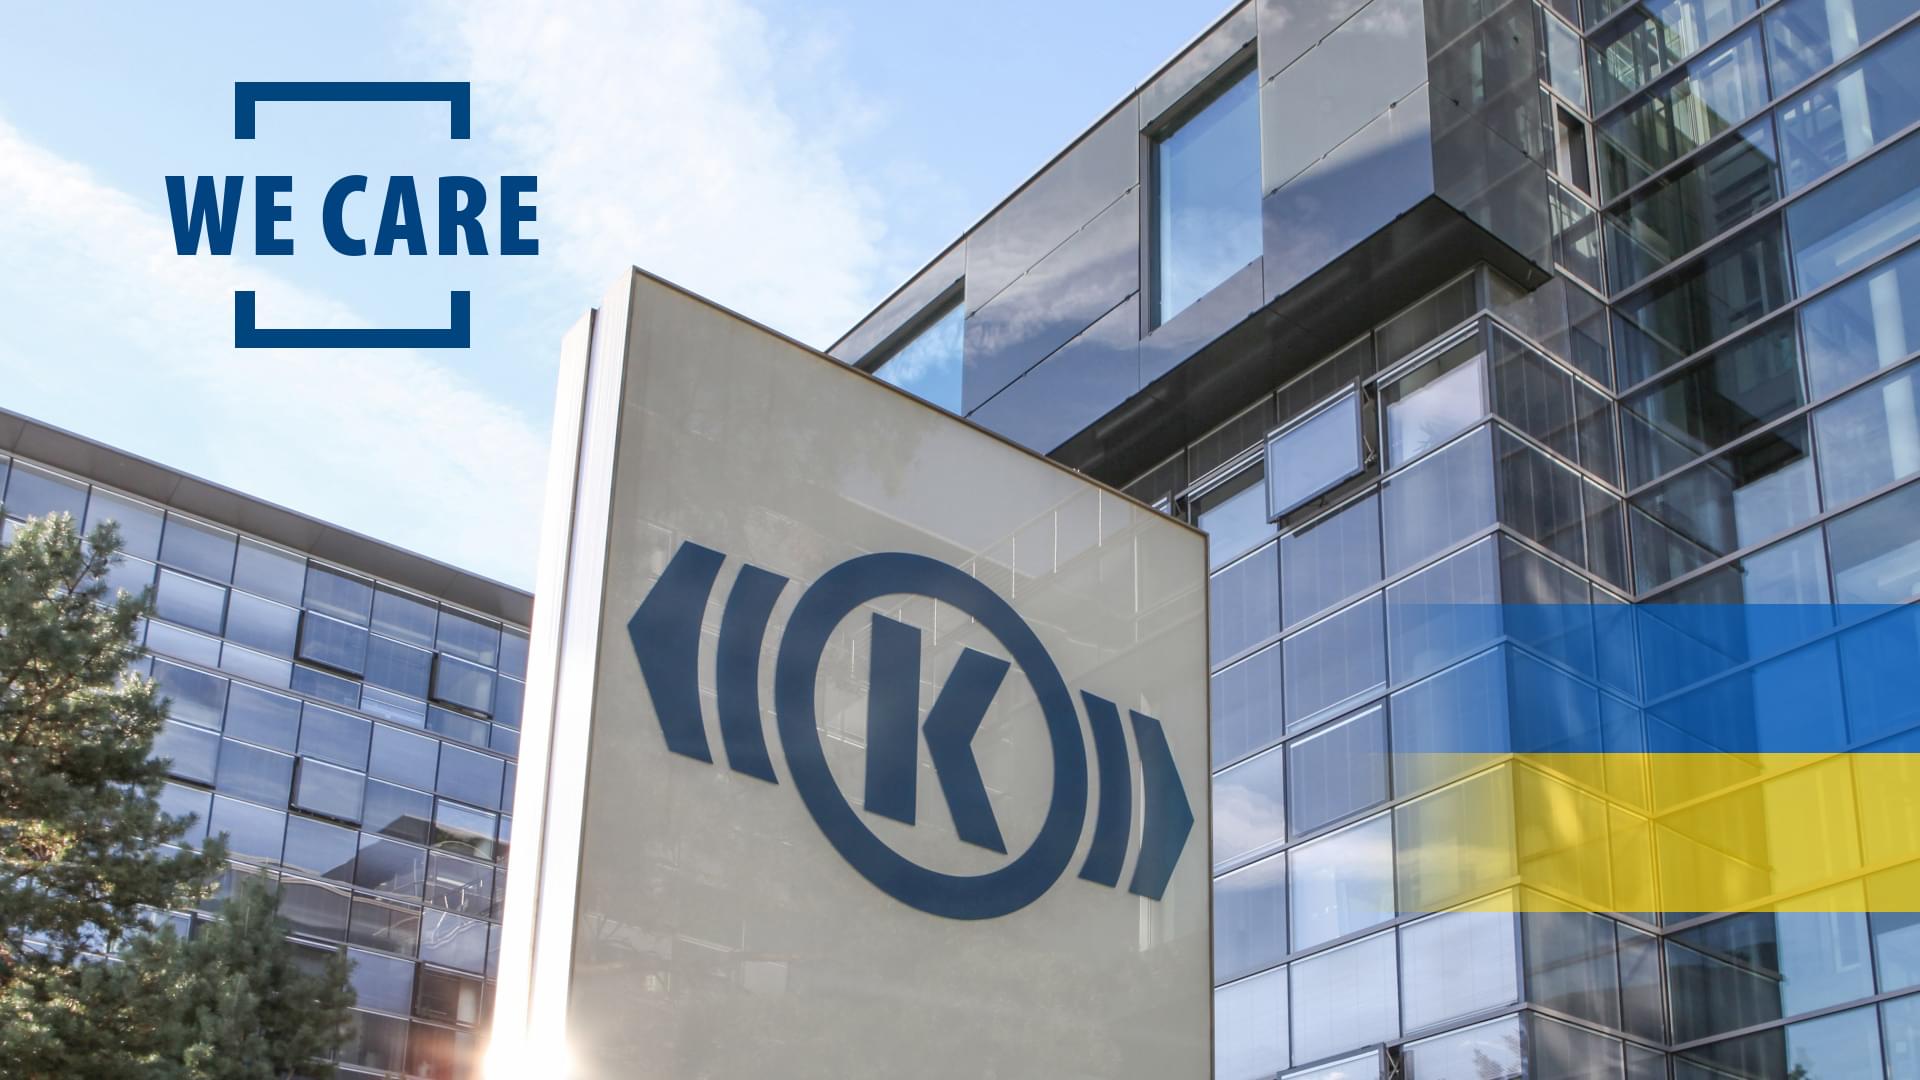 Foto eines Gebäudes von Knorr-Bremse am Firmenhauptsitz in München, auf das grafisch der Schriftzug "We Care" und eine ukrainische Flagge gesetzt wurde.